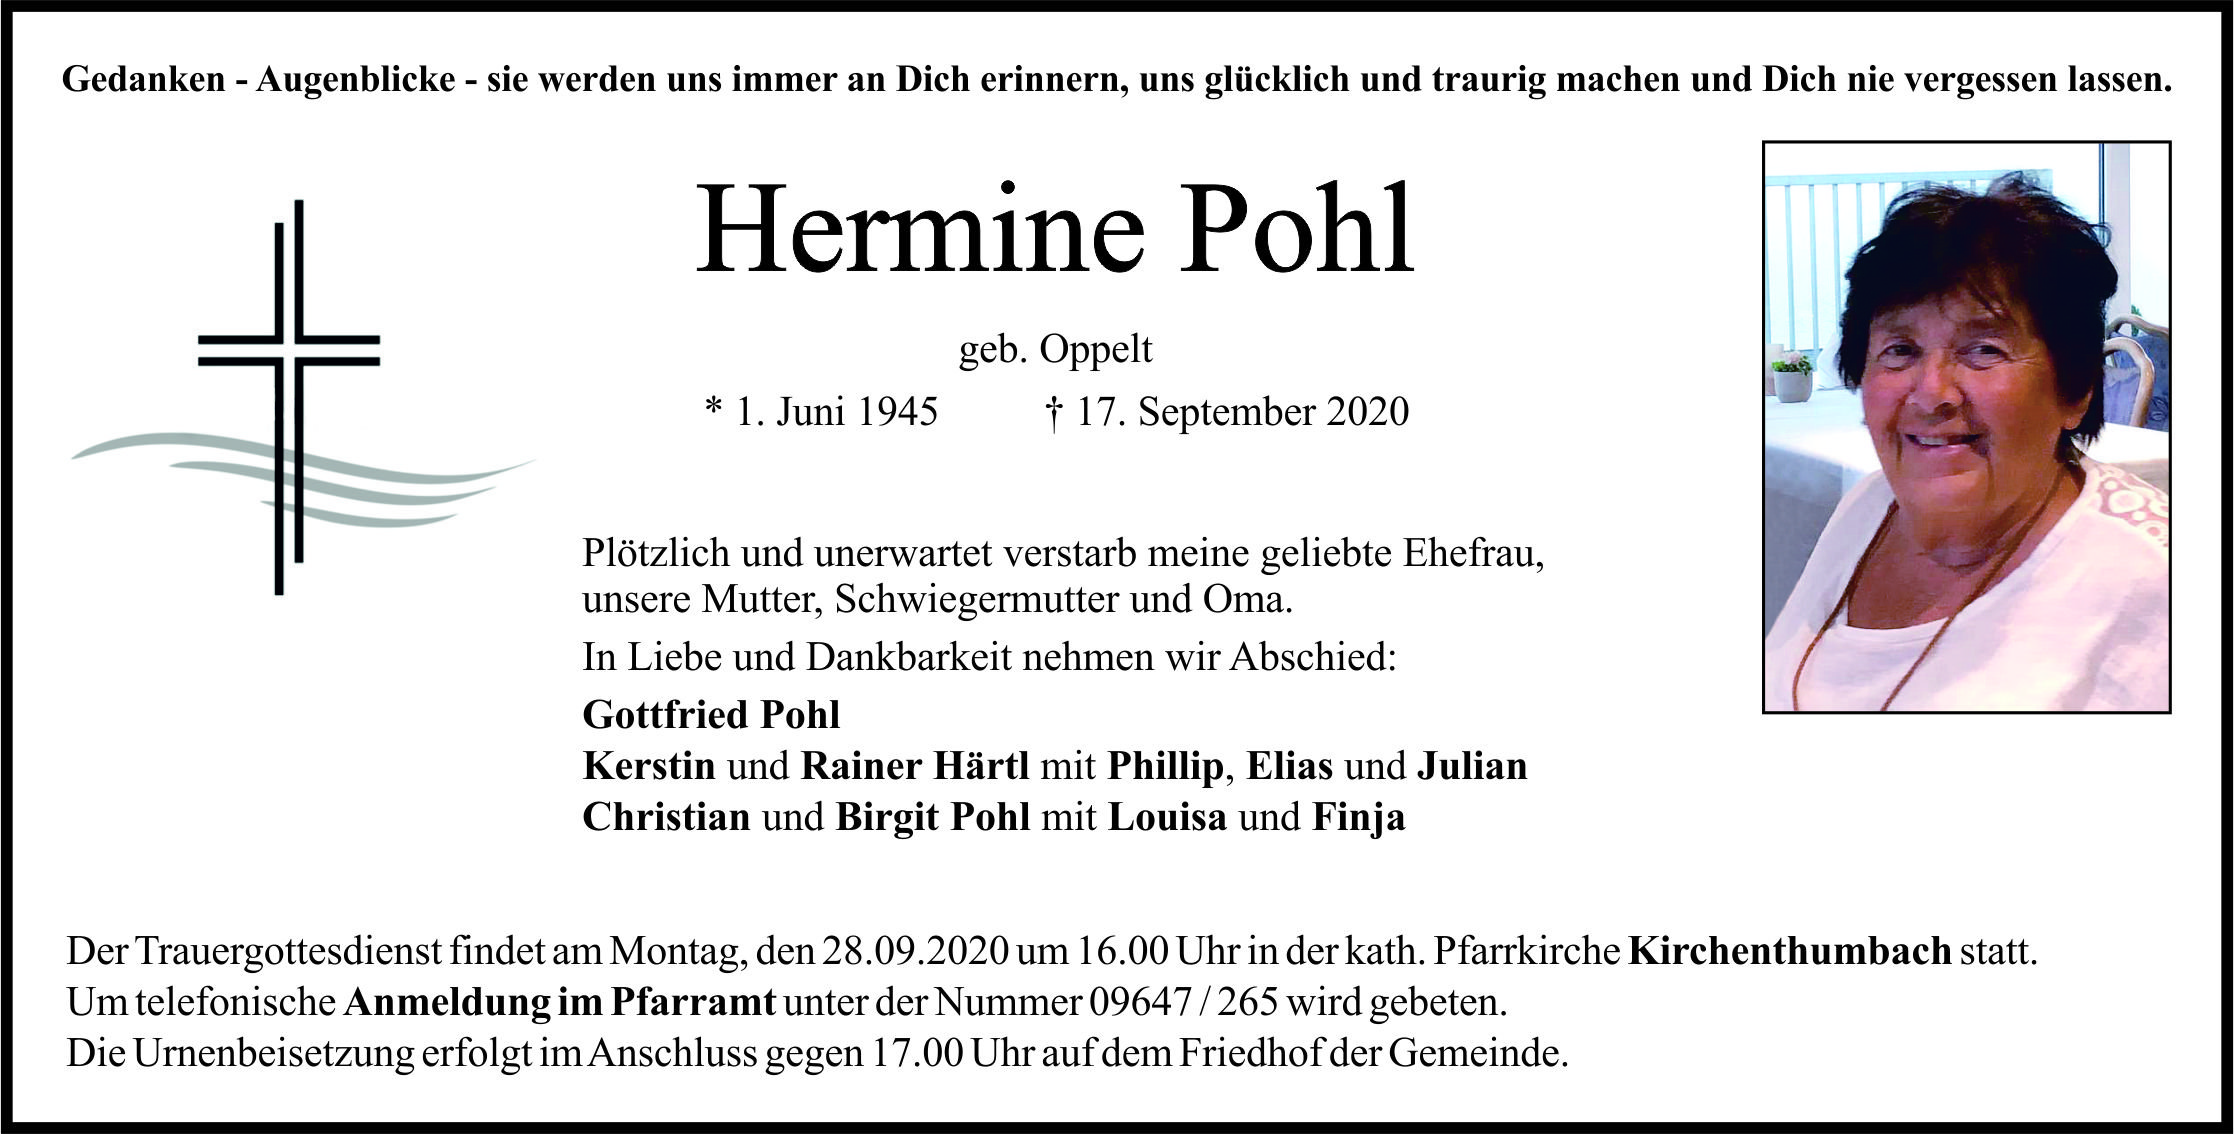 Traueranzeige Hermine Pohl, Kirchenthumbach